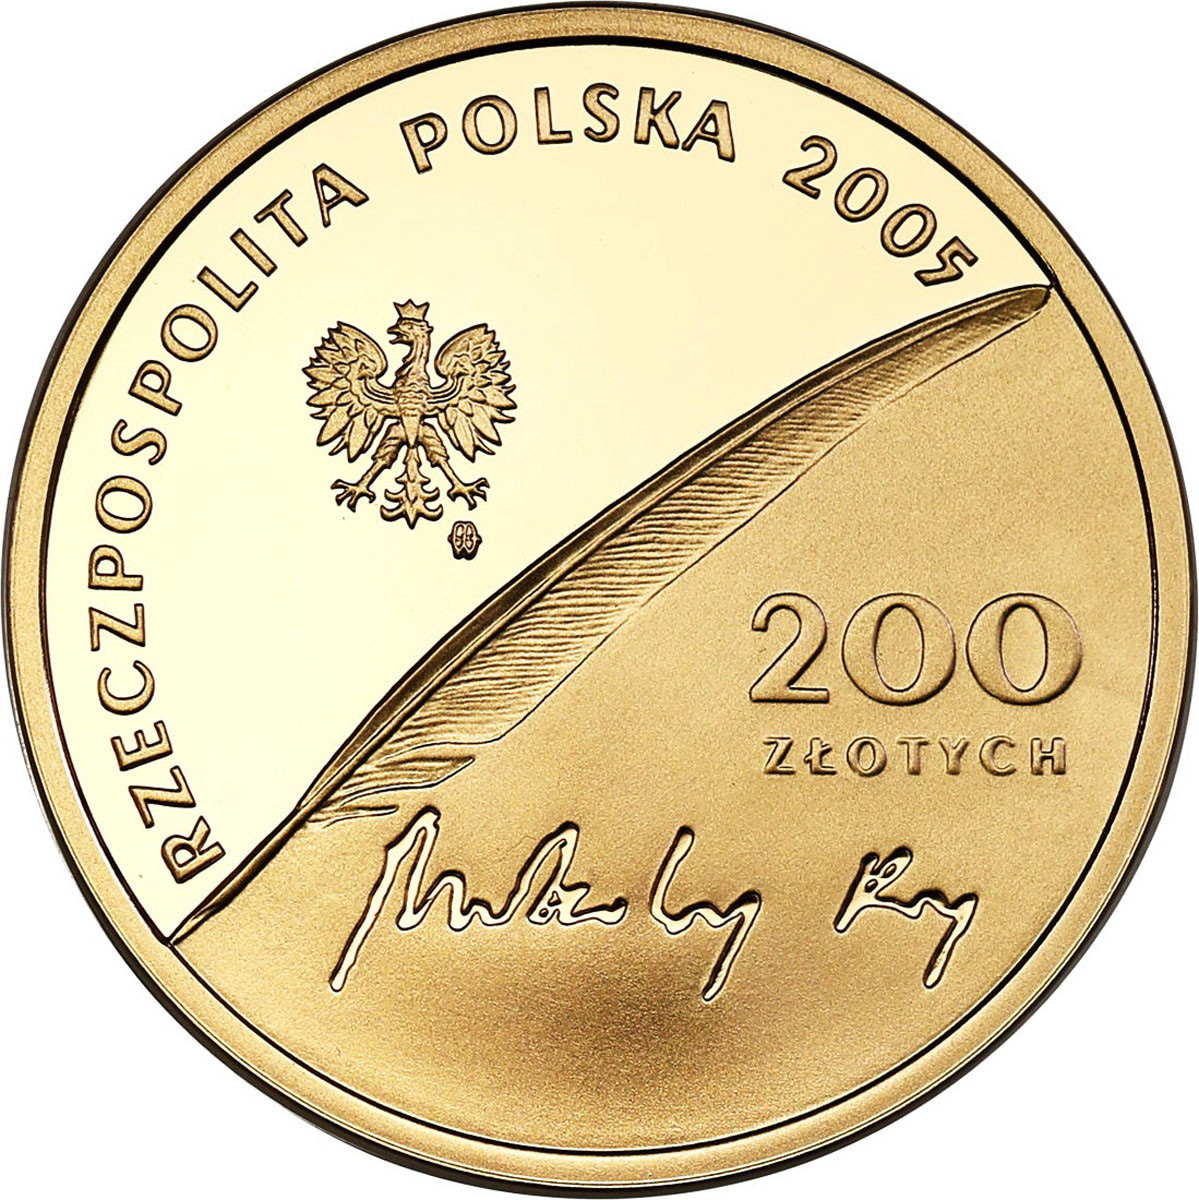 III RP. 200 złotych 2005 Mikołaj Rej